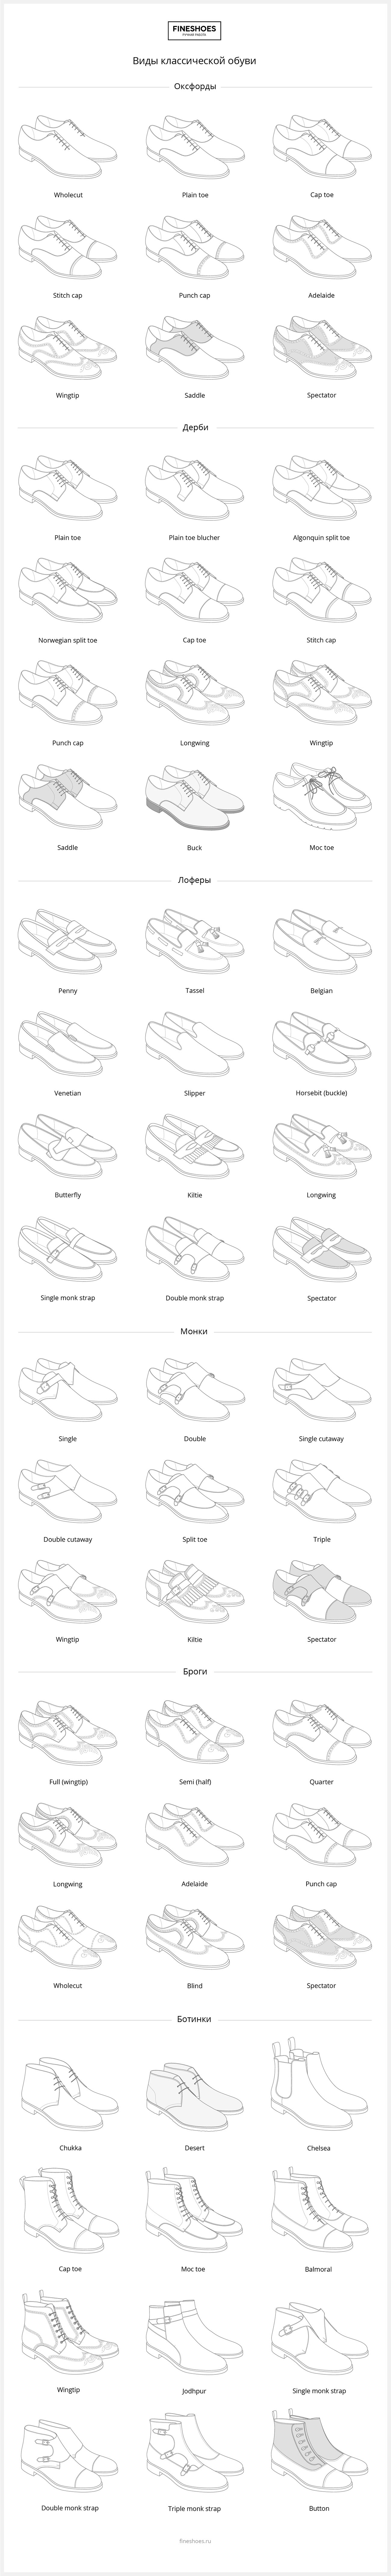 Иллюстрация видов обуви